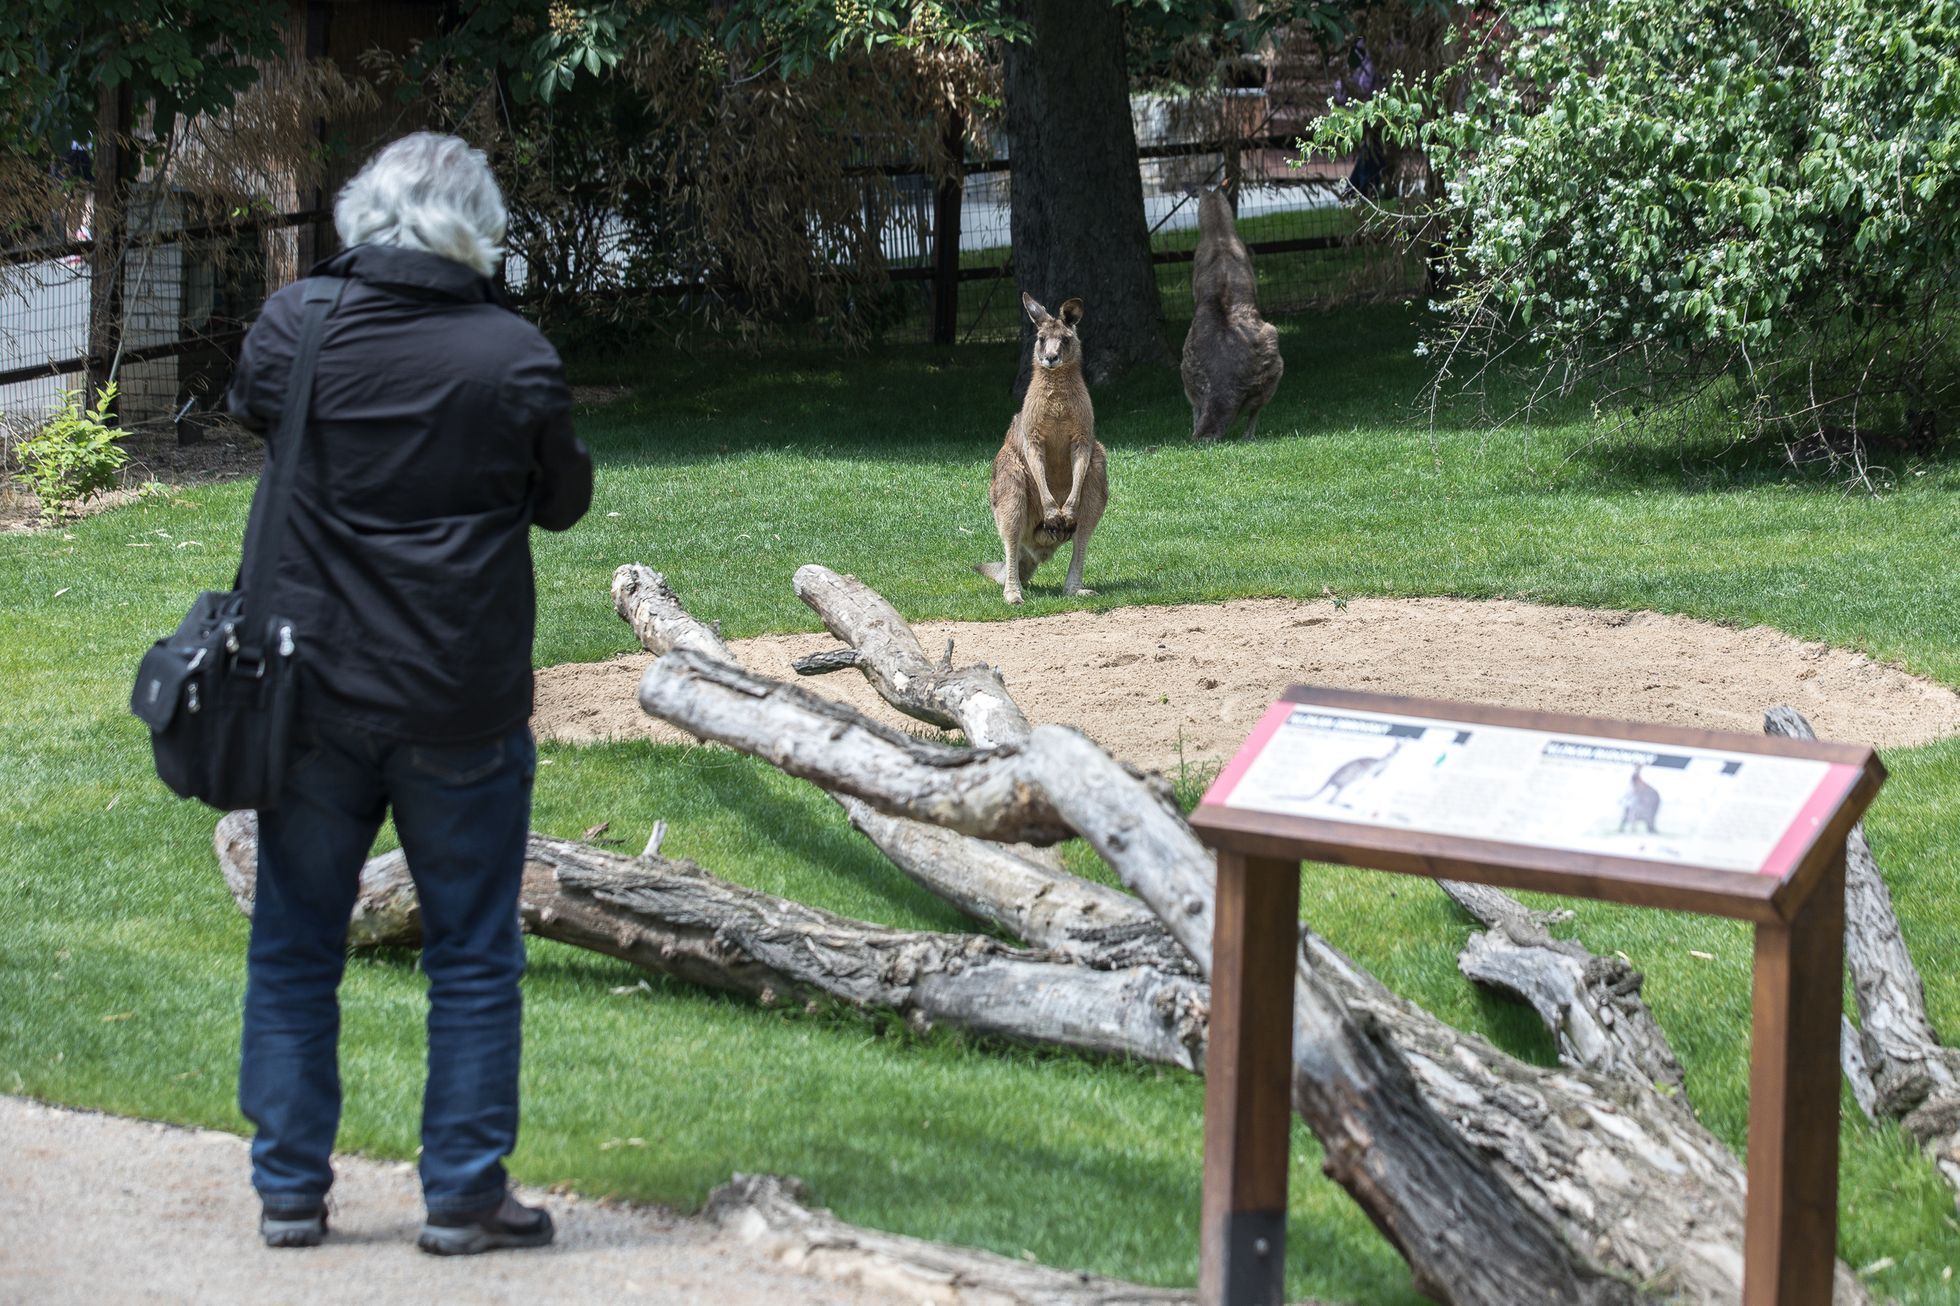 Tasmánští čerti v pražské zoo - nový pavilon Darwinův kráter